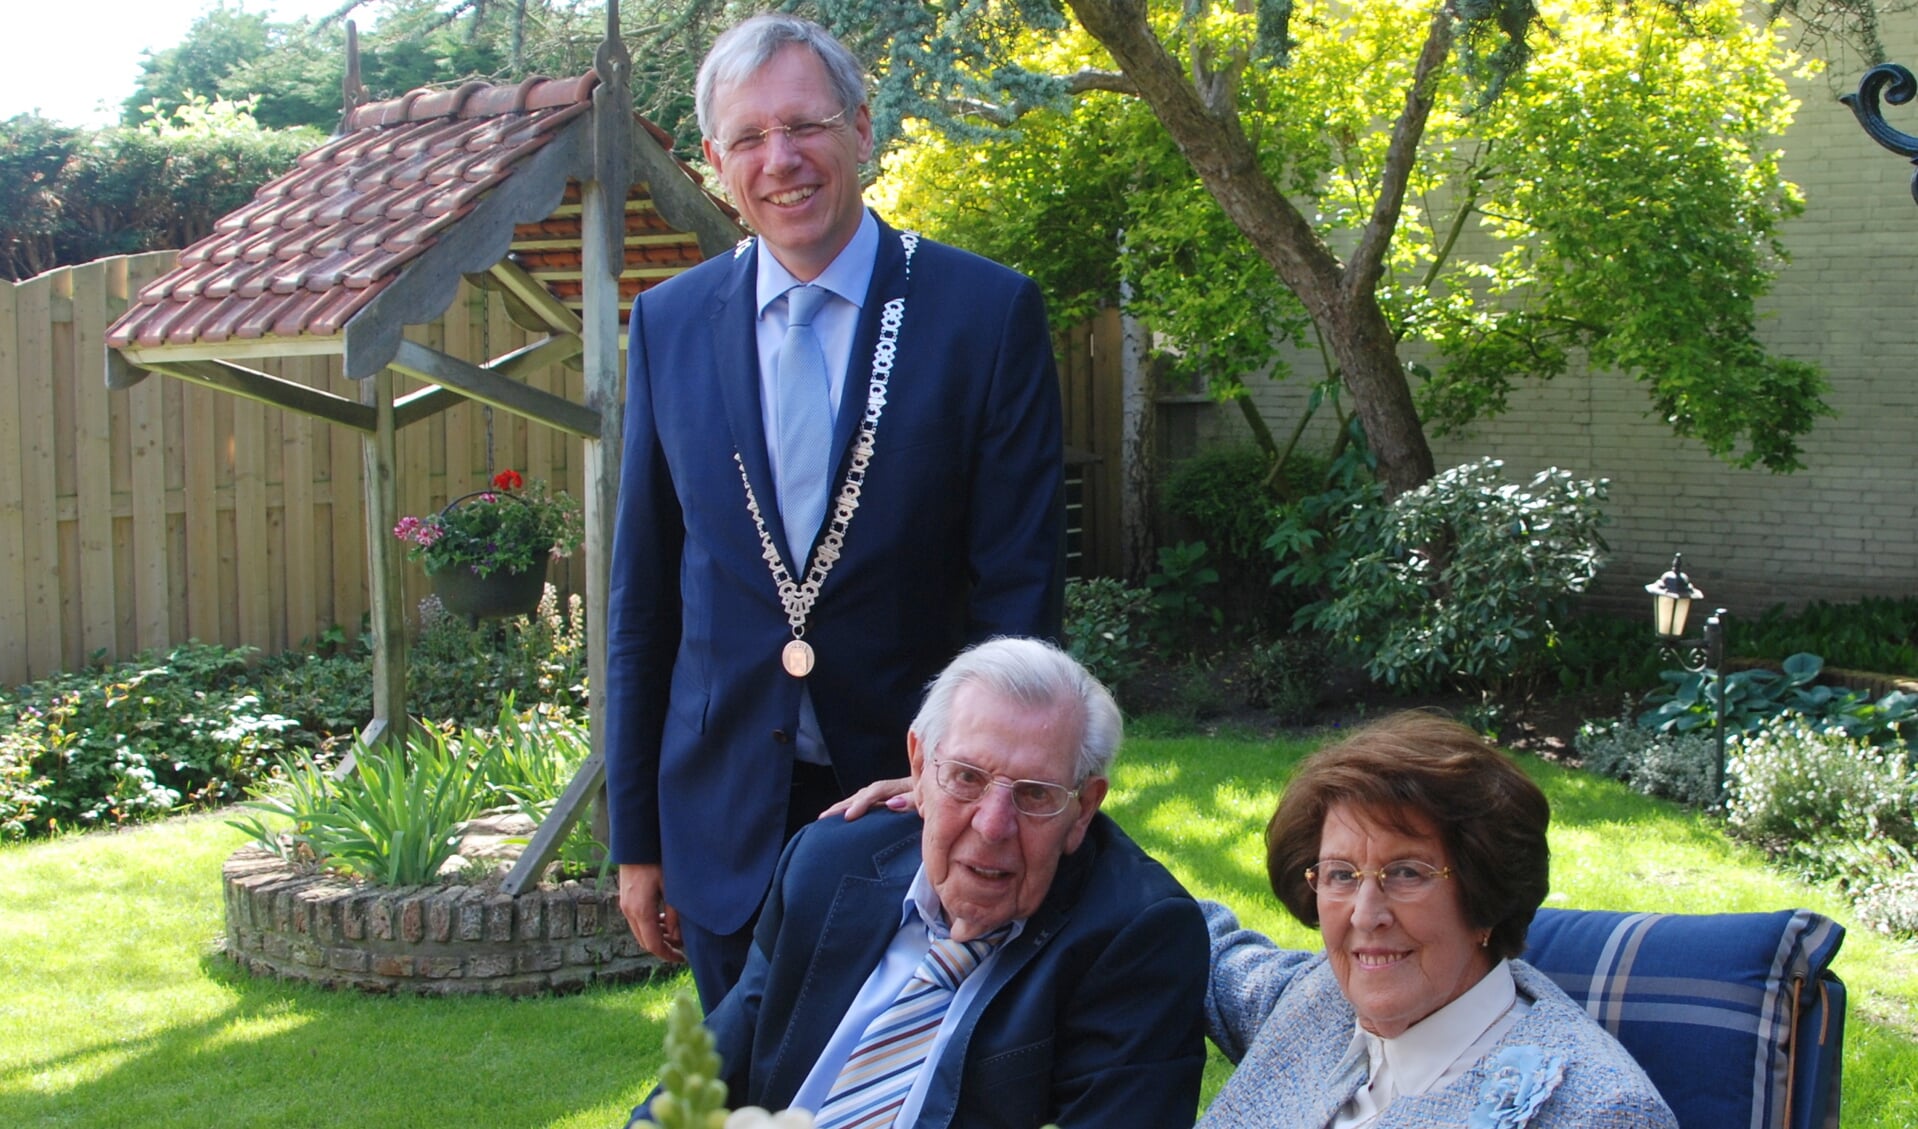 Burgemeester Visser op bezoek bij het echtpaar van Egmond-den Haan. | Foto: PvK.